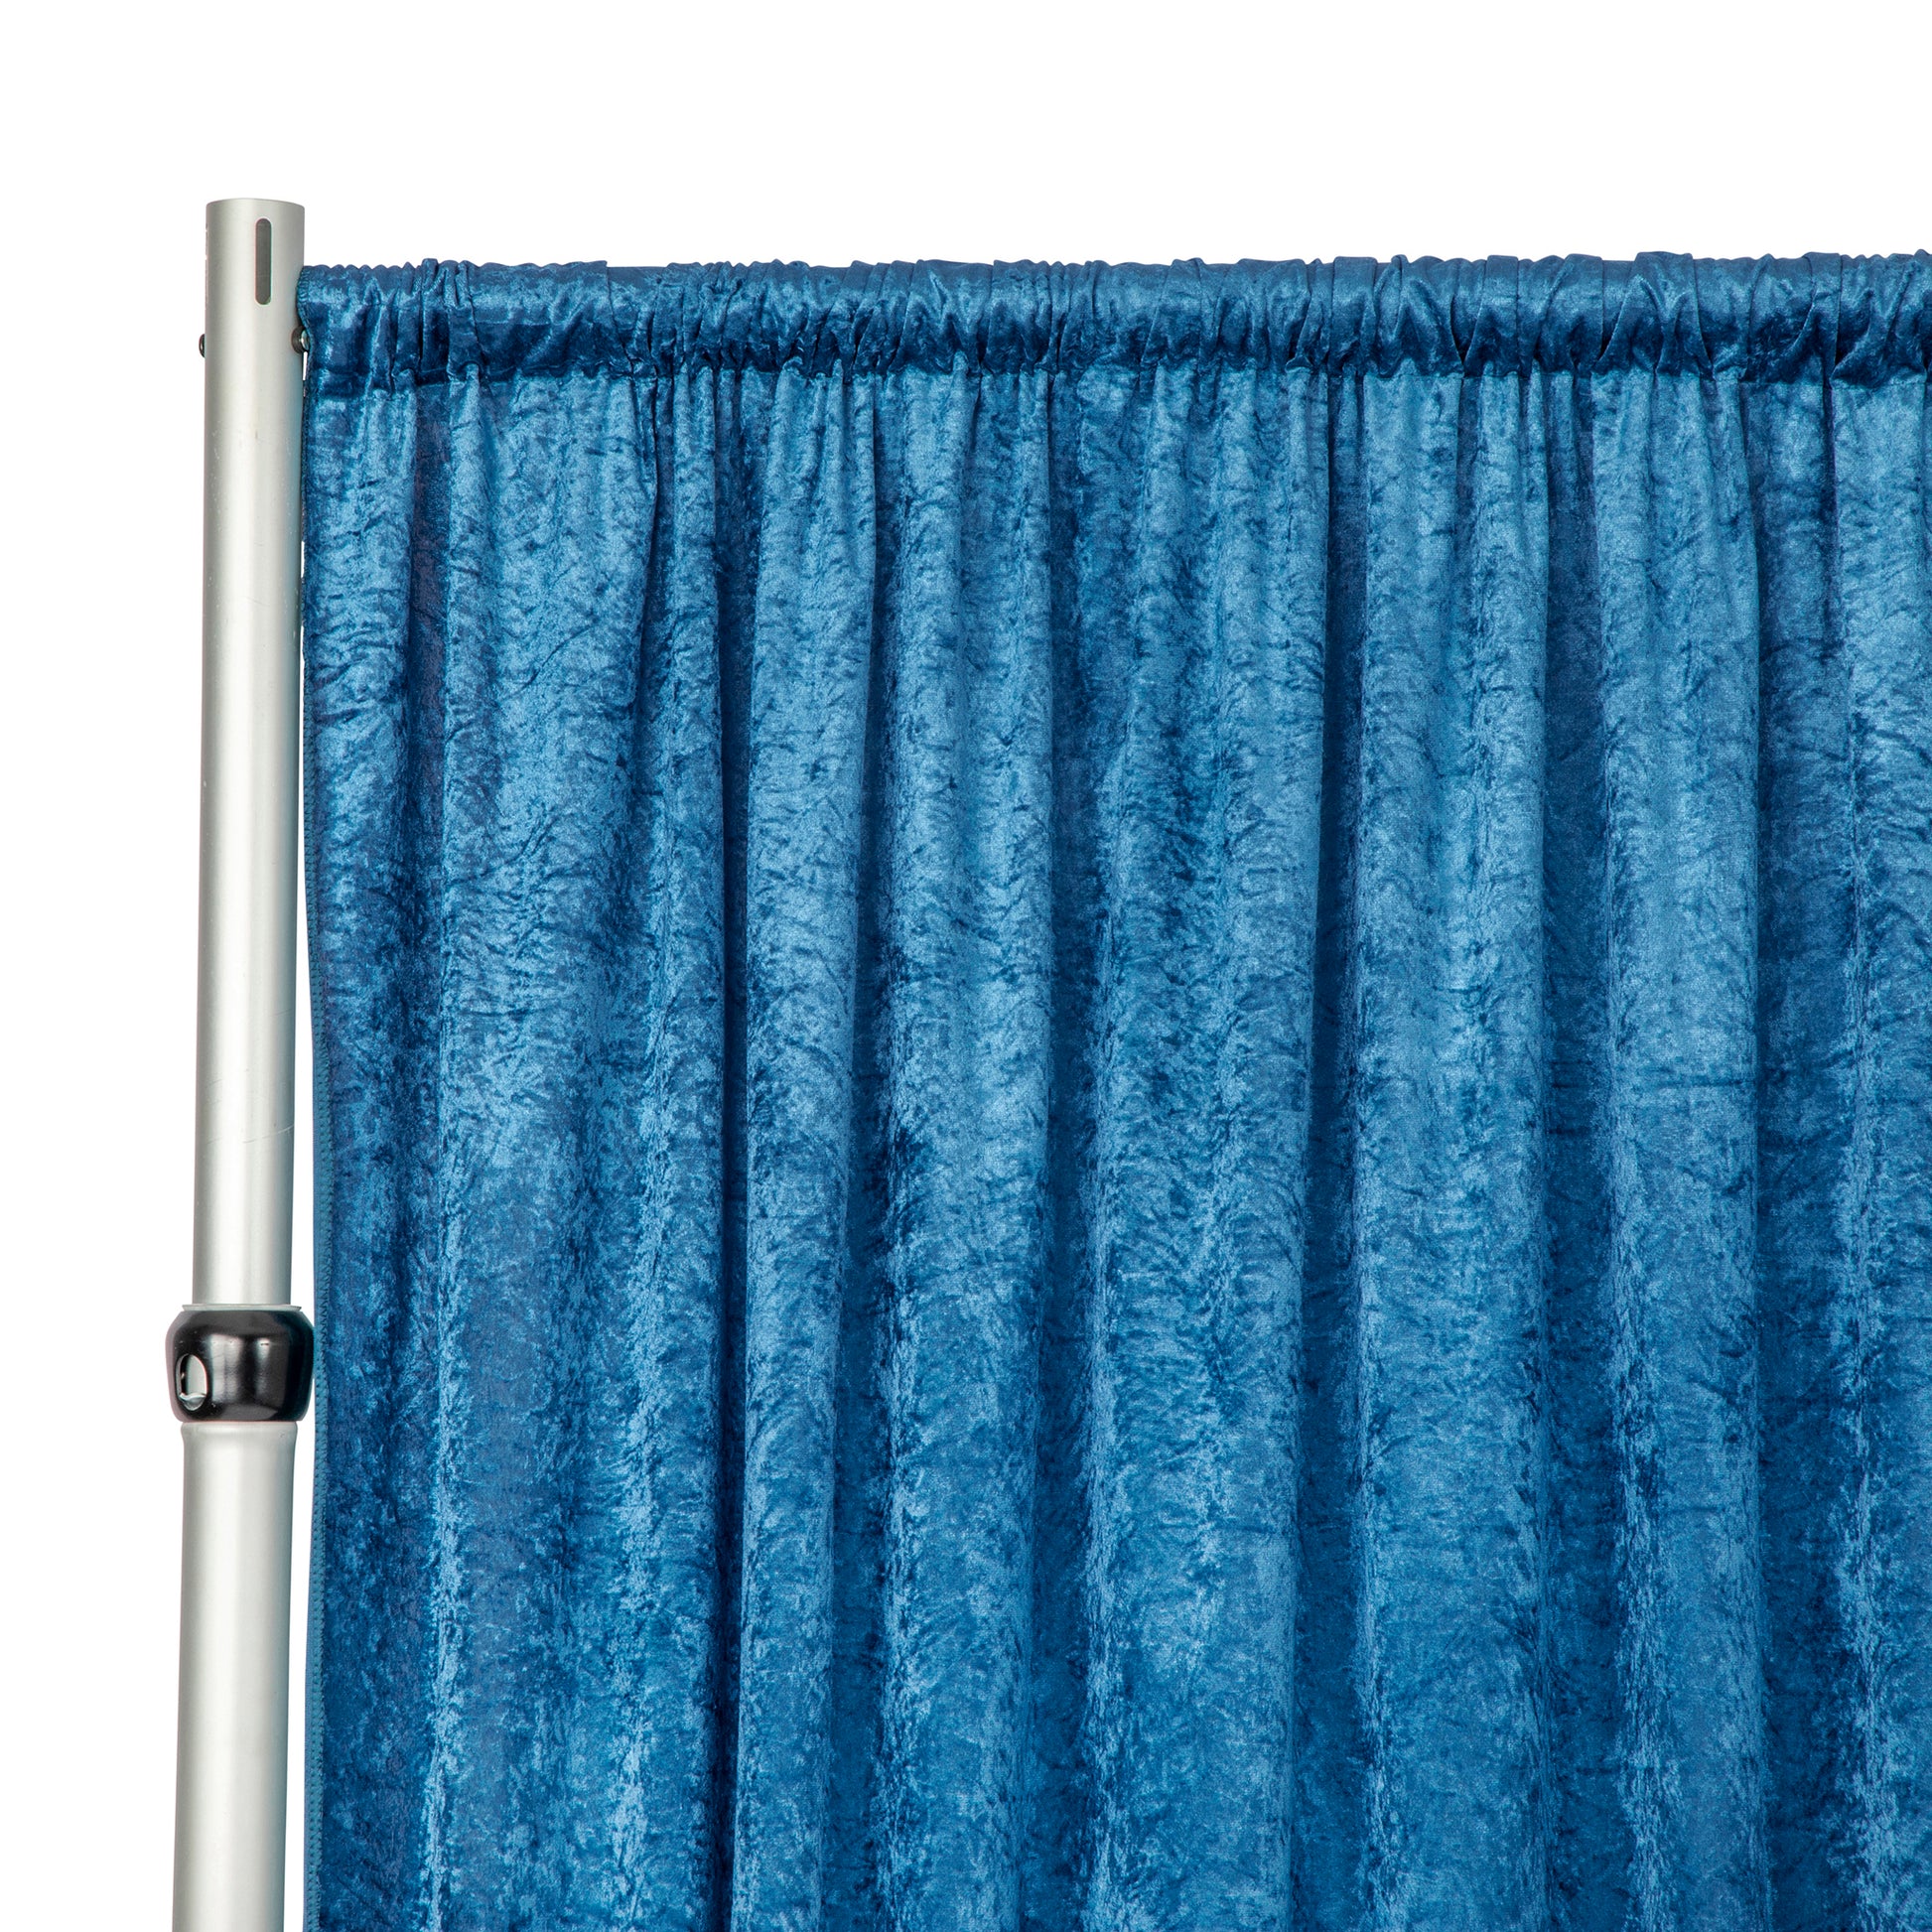 Velvet 10ft H x 52" W Drape/Backdrop Curtain Panel - Dark Teal